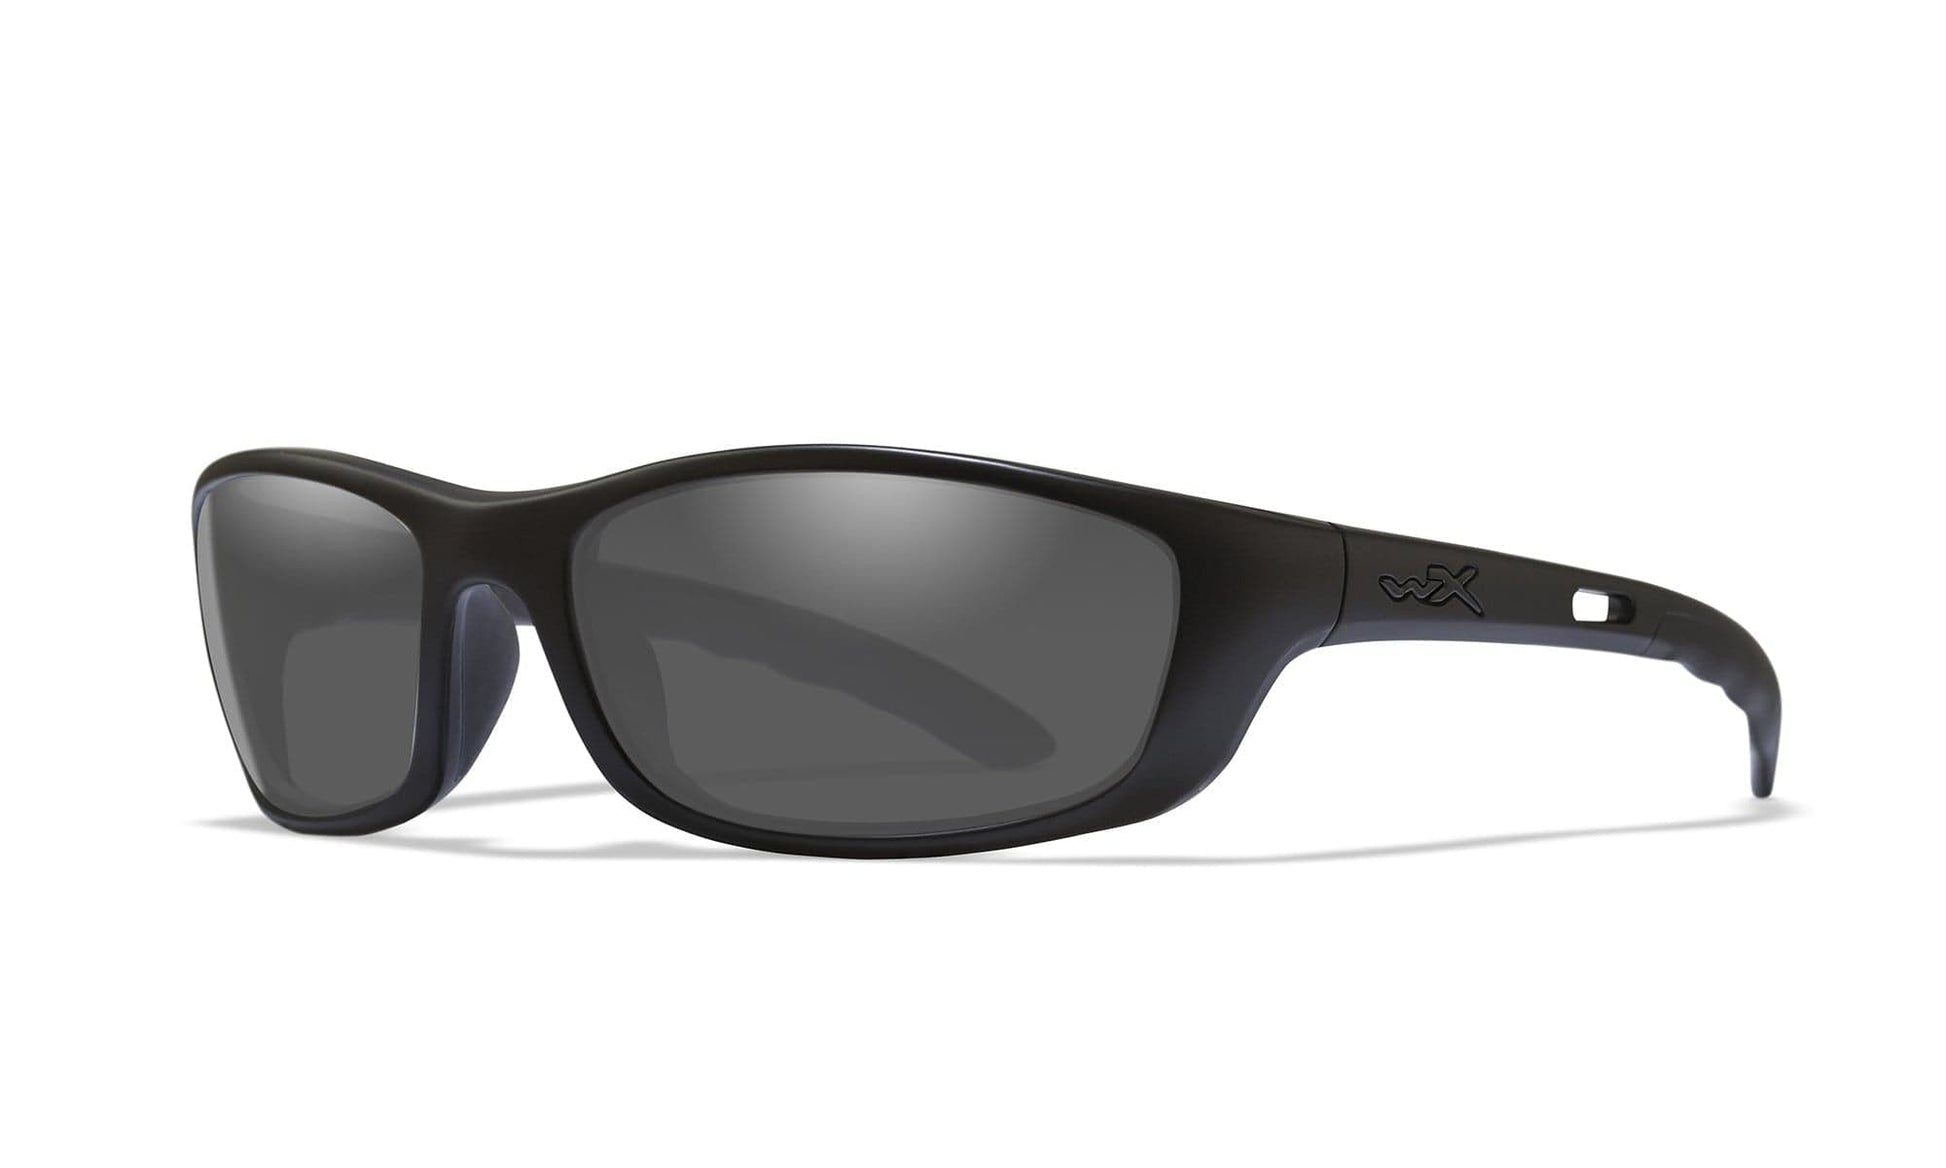 WILEY X P-17 Sunglasses  Matte Black 61-18-120